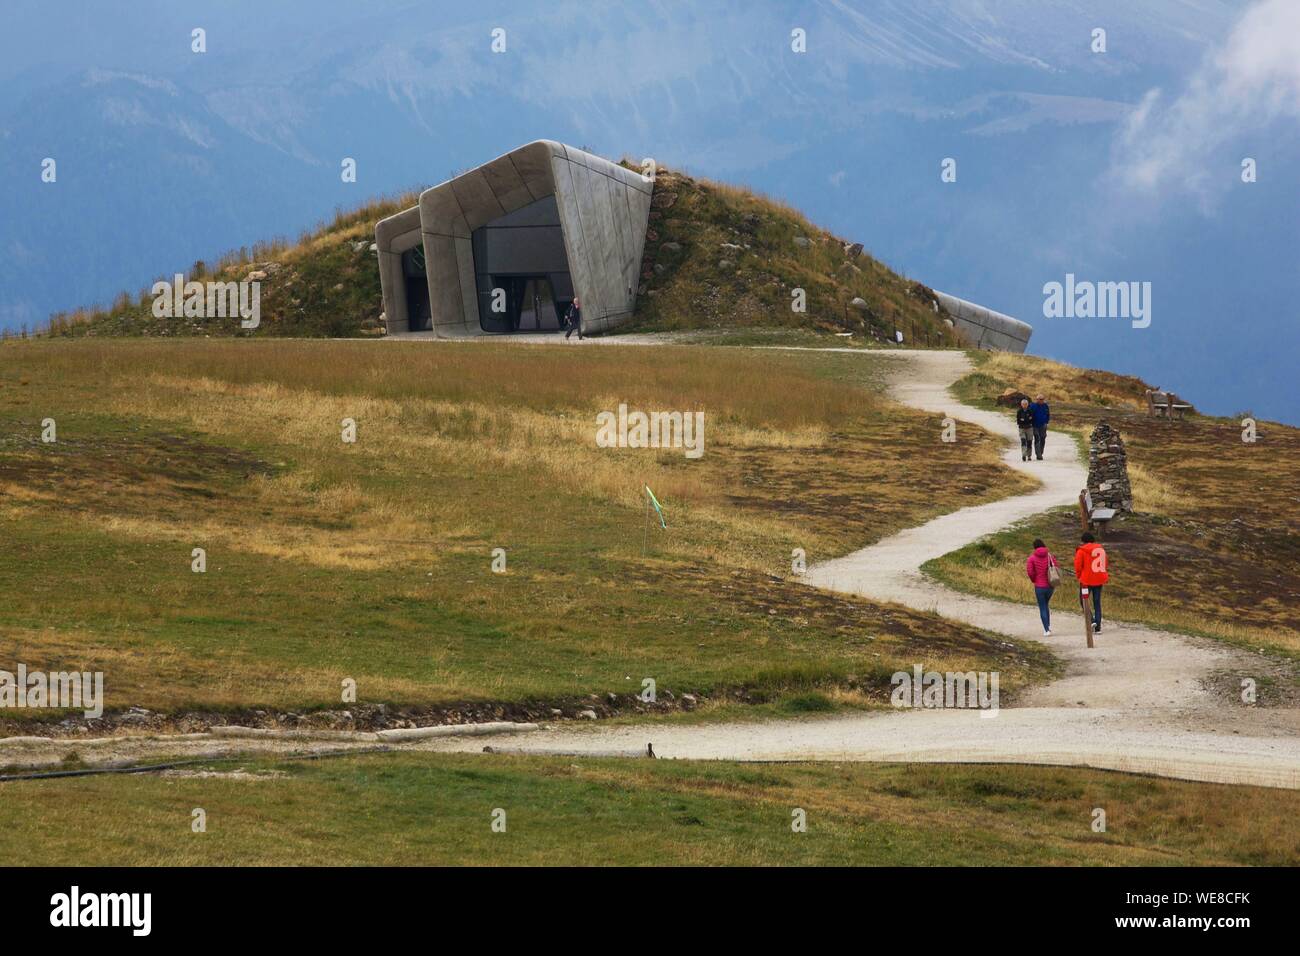 L'Italia, provincia autonoma di Bolzano, Val Pusteria, gli escursionisti su un sentiero di accesso al Messner Mountain Museum, museo futurista firmato Zaha Hadid arroccato sulla cima di una montagna e dedicato a montanaro e alpinista Reinhold Messner Foto Stock